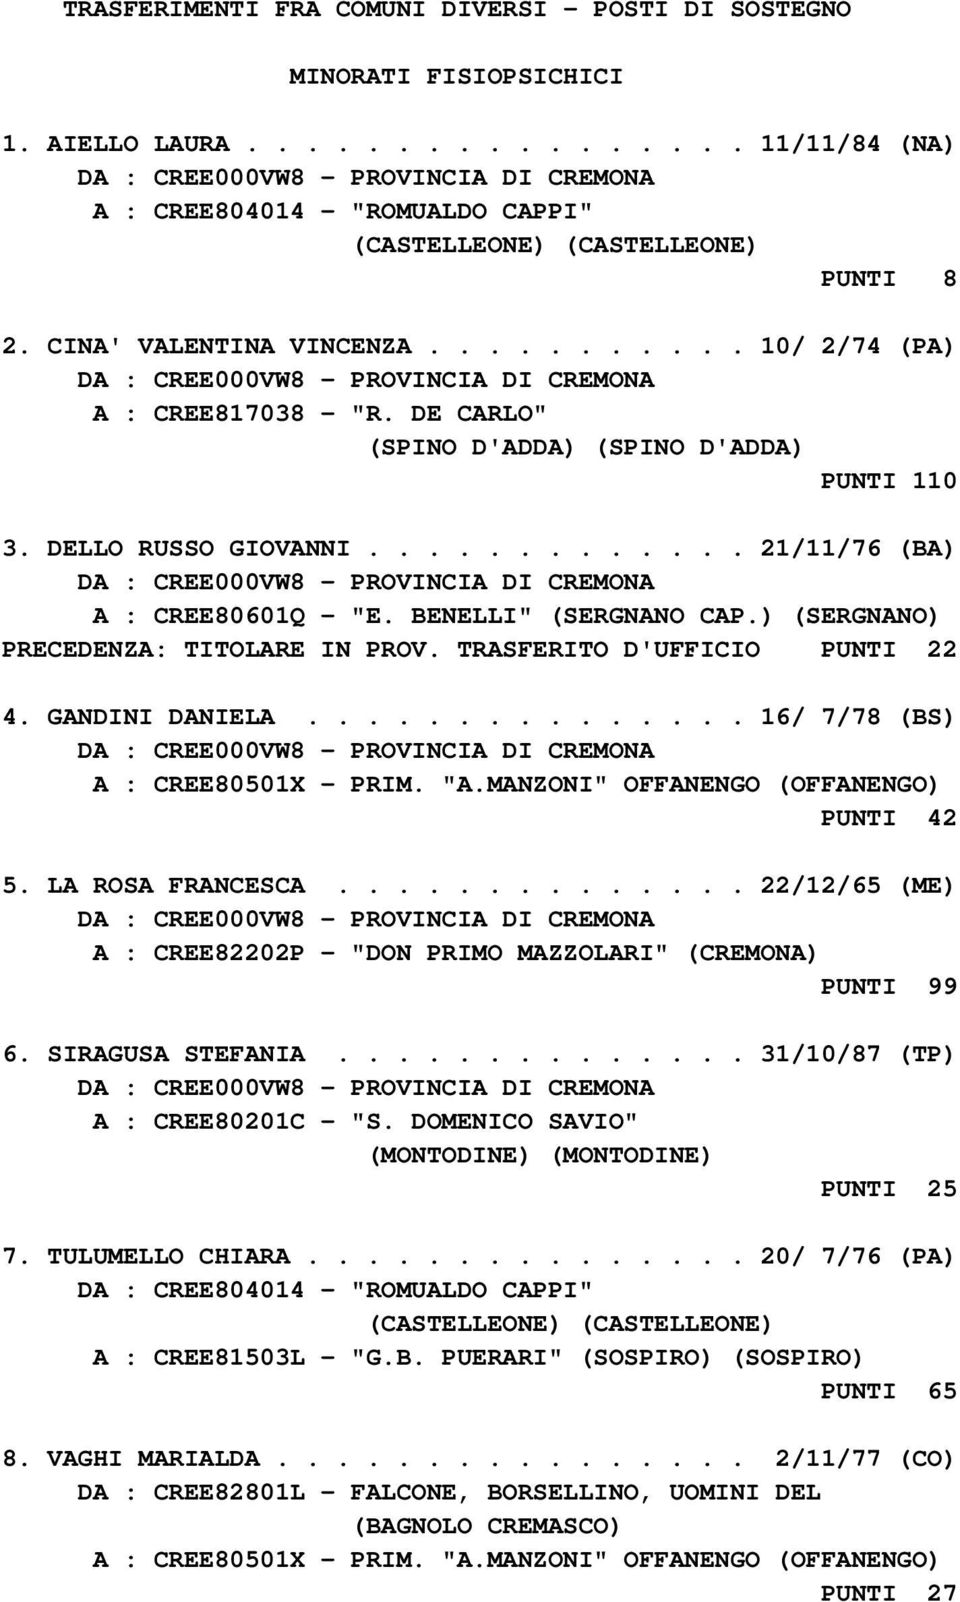 ) (SERGNANO) PRECEDENZA: TITOLARE IN PROV. TRASFERITO D'UFFICIO PUNTI 22 4. GANDINI DANIELA............... 16/ 7/78 (BS) A : CREE80501X - PRIM. "A.MANZONI" OFFANENGO (OFFANENGO) PUNTI 42 5.